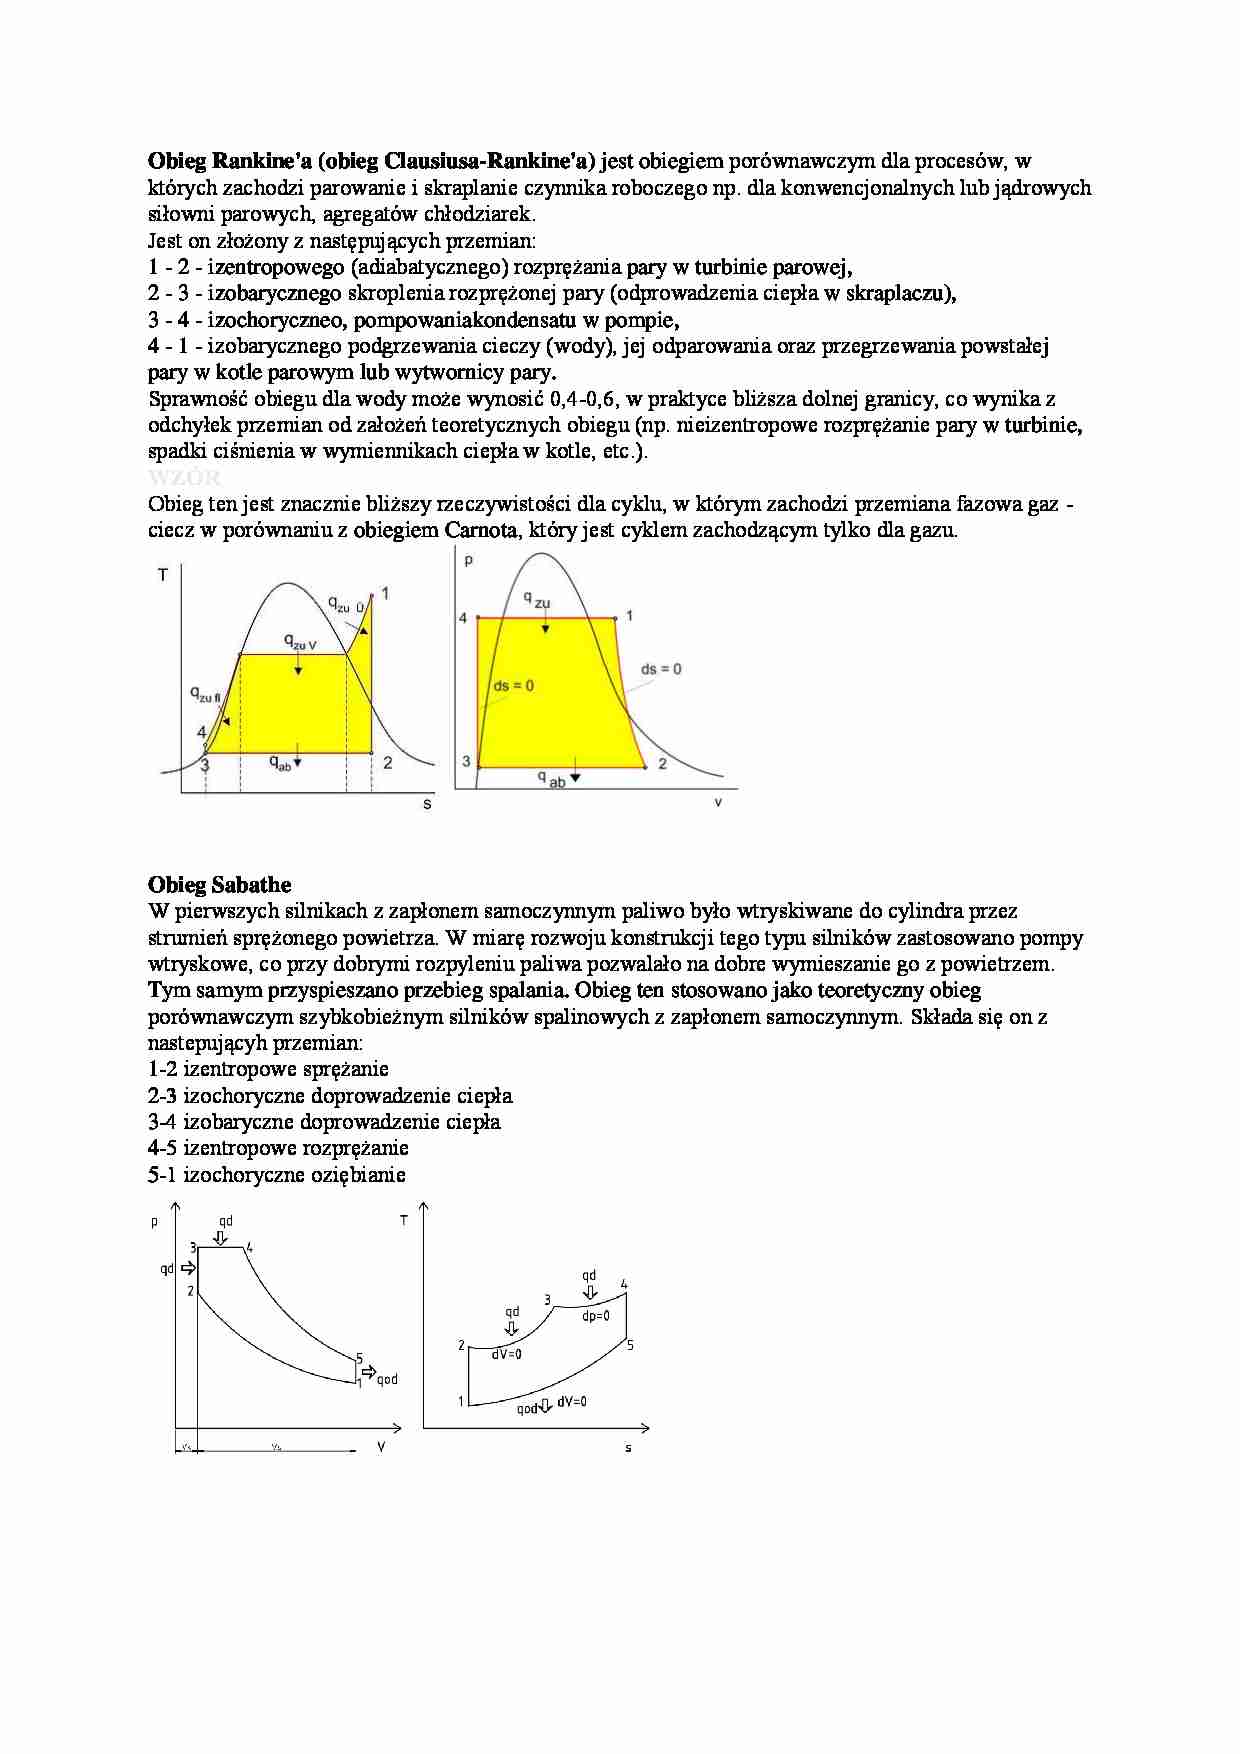 Obiegi w termodynamice - wykład - strona 1